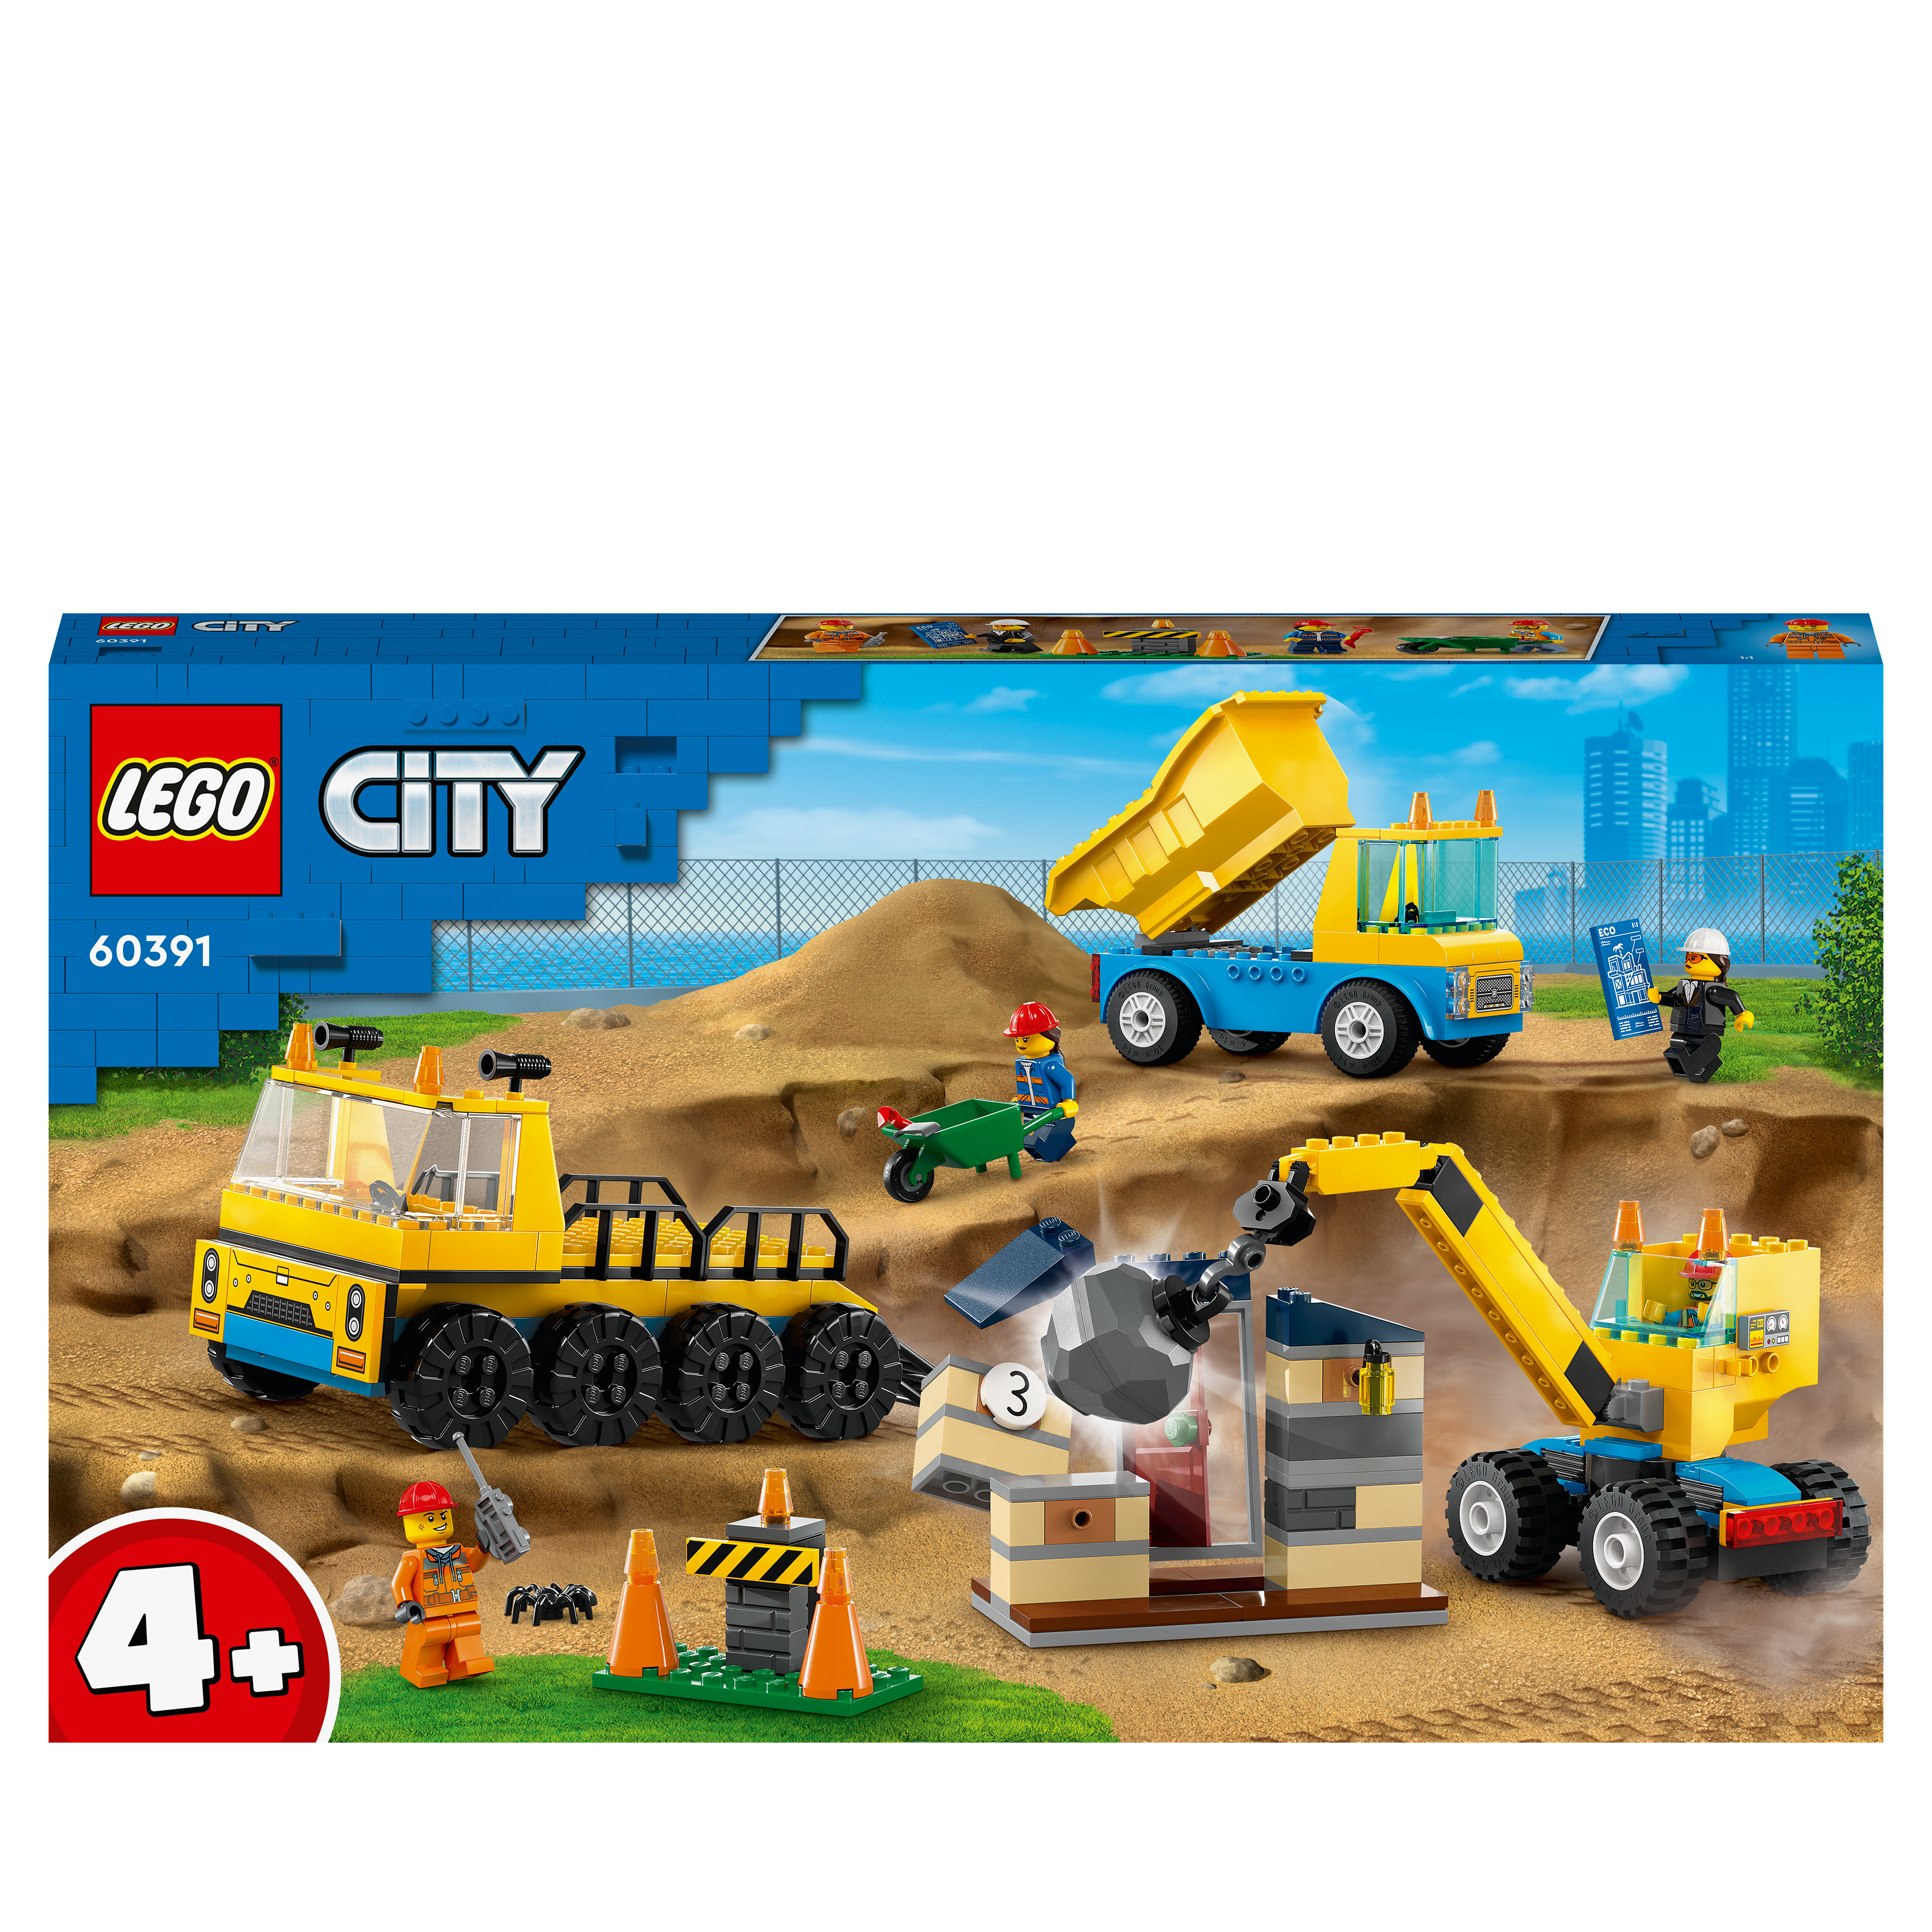 LEGO City 60391 Baufahrzeuge Bausatz, Kran und mit Mehrfarbig Abrissbirne